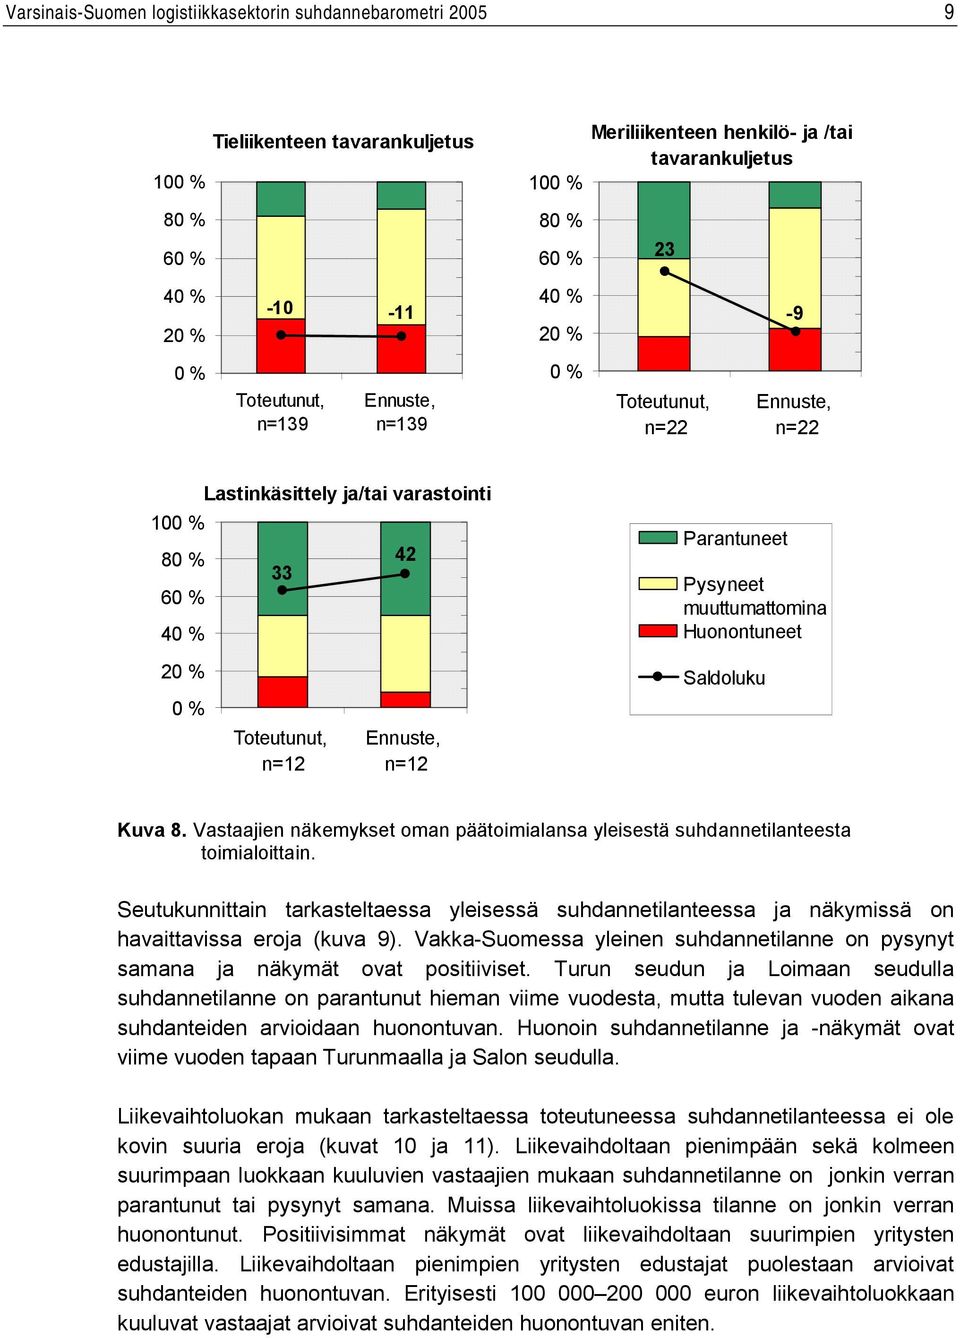 Seutukunnittain tarkasteltaessa yleisessä suhdannetilanteessa ja näkymissä on havaittavissa eroja (kuva 9). Vakka-Suomessa yleinen suhdannetilanne on pysynyt samana ja näkymät ovat positiiviset.